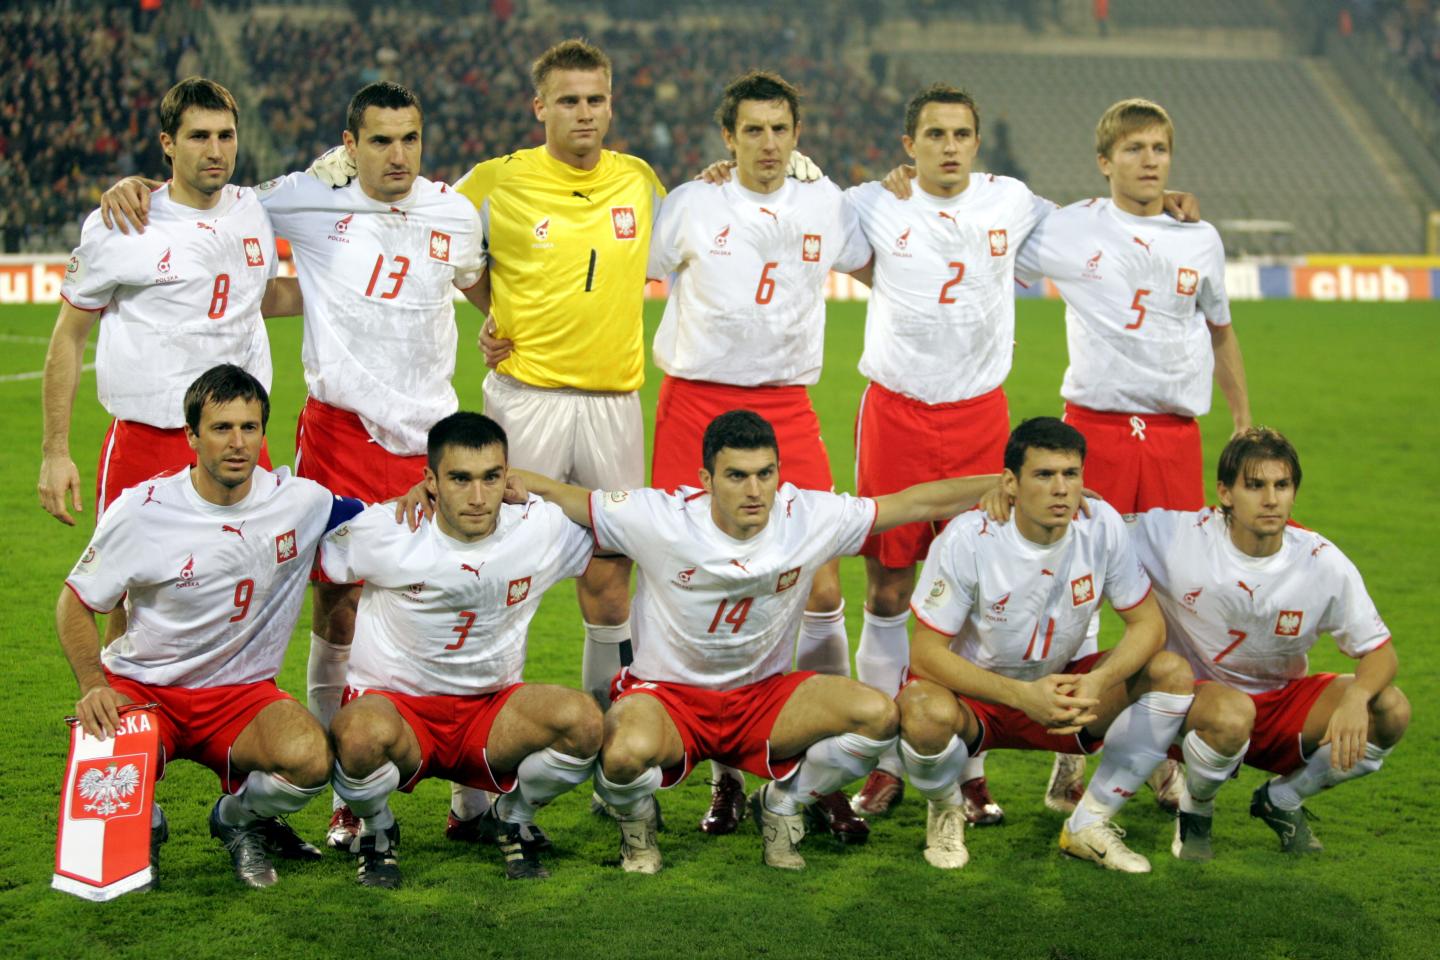 Reprezentacja Polski (w białych koszulkach z husarzem, czerwonych spodenkach) przed meczem z Belgią w Brukseli.